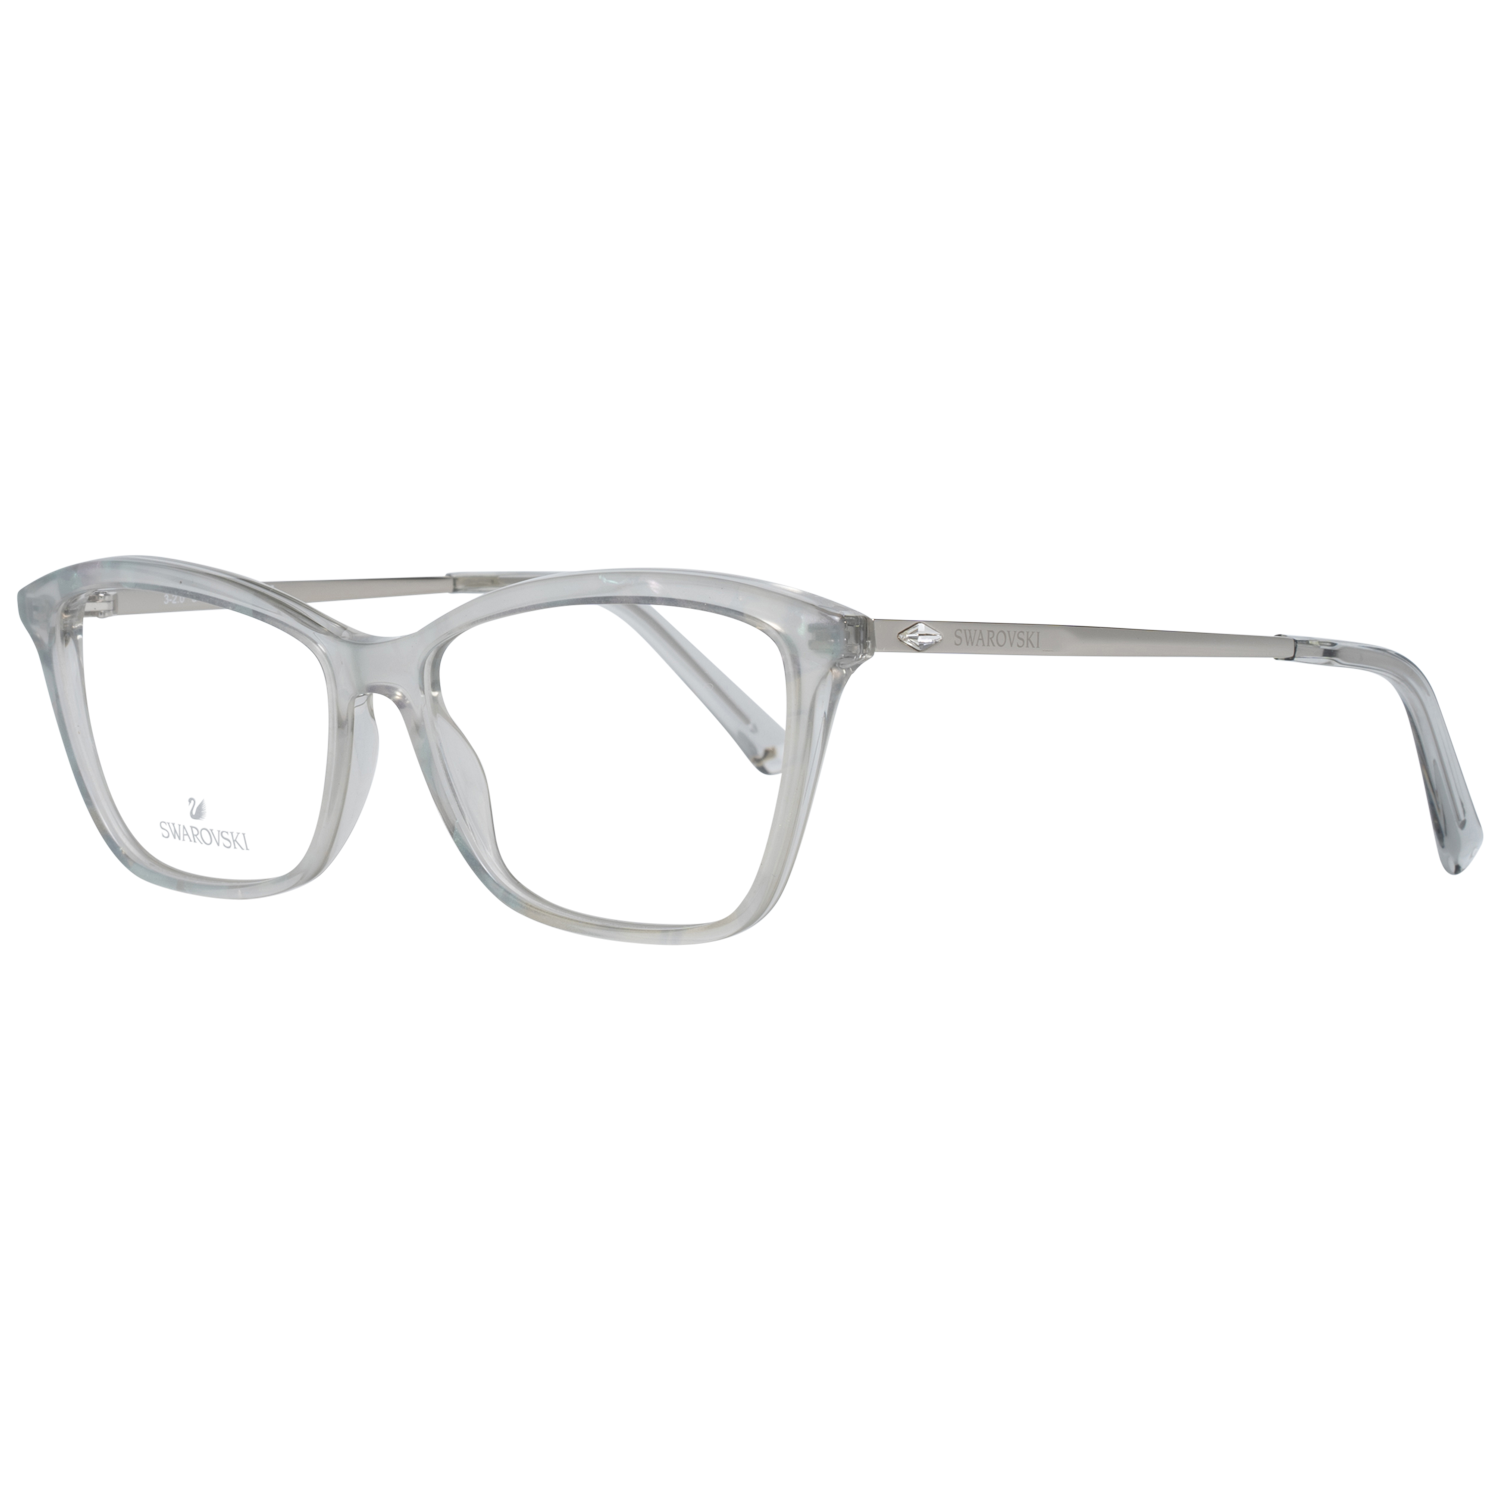 Swarovski Frames Swarovski Women Glasses Optical Frame SK5314 020 54 Eyeglasses Eyewear UK USA Australia 